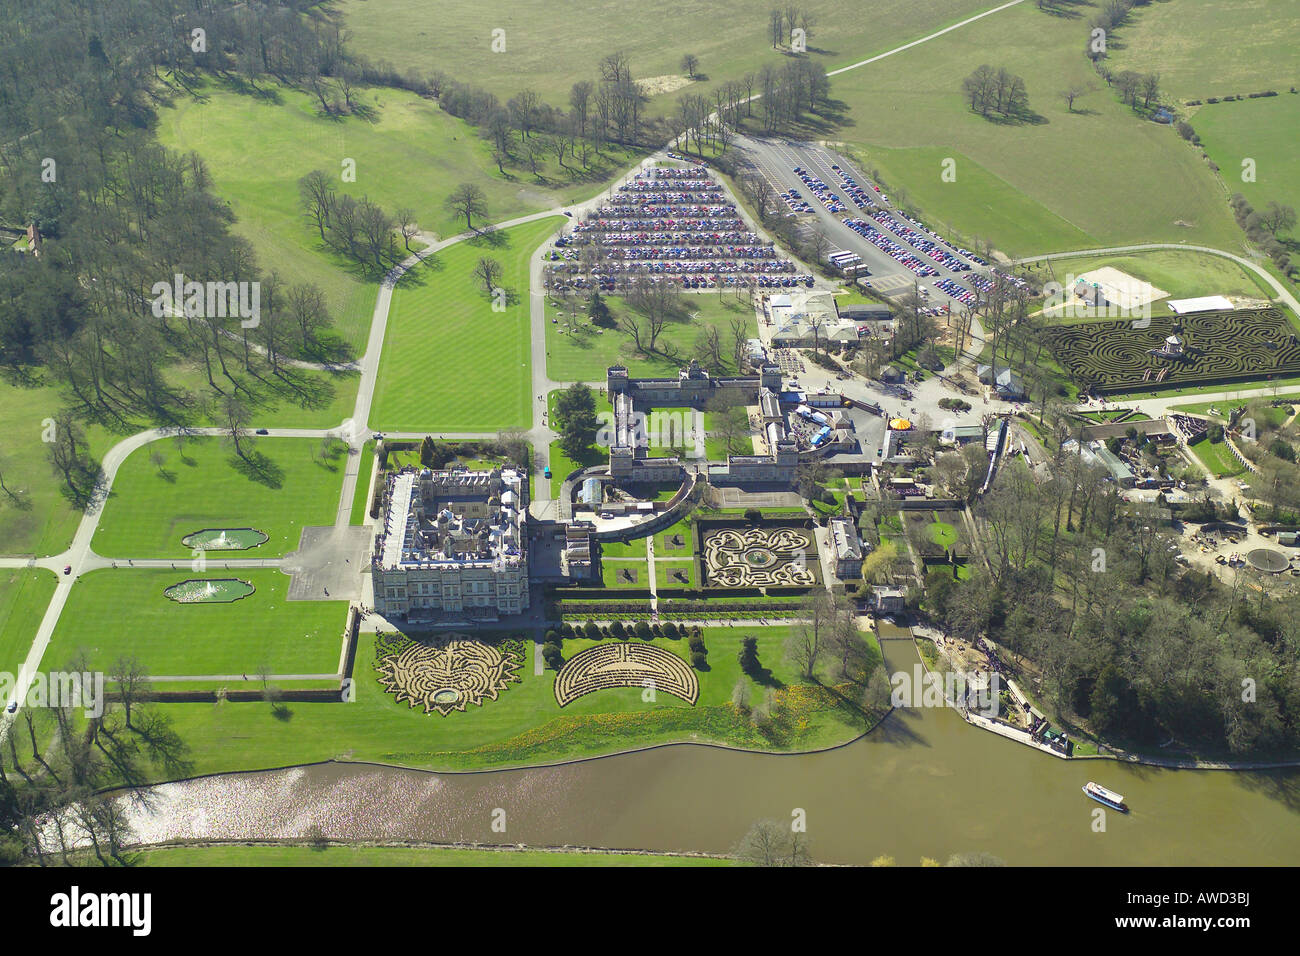 Vista aerea di Longleat House mostrato con i giardini formali e il lago. La dimora signorile è famosa per il suo parco di safari Foto Stock